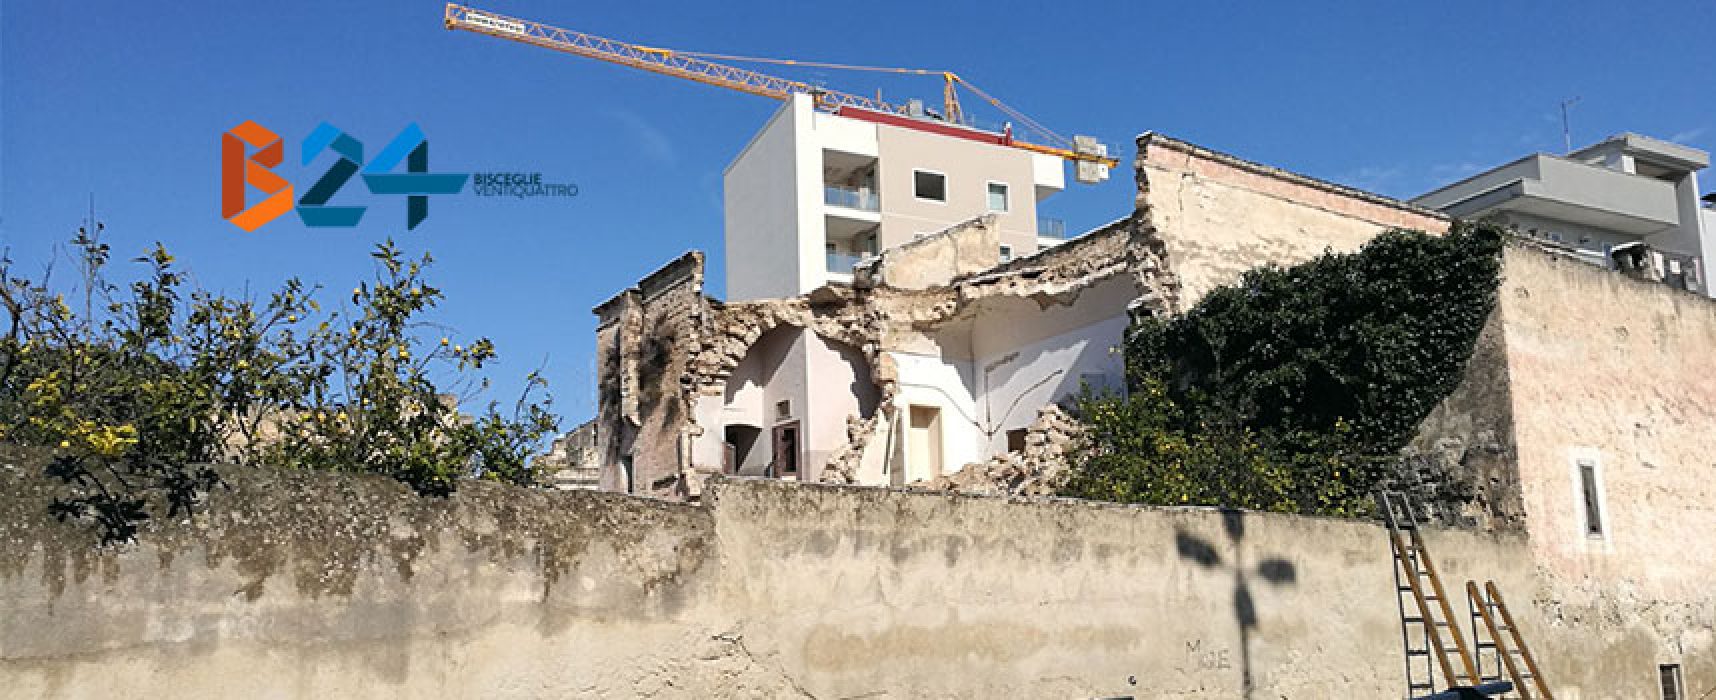 Crolla palazzo, cinquantenne miracolosamente salvo / IL VIDEO DEL SALVATAGGIO